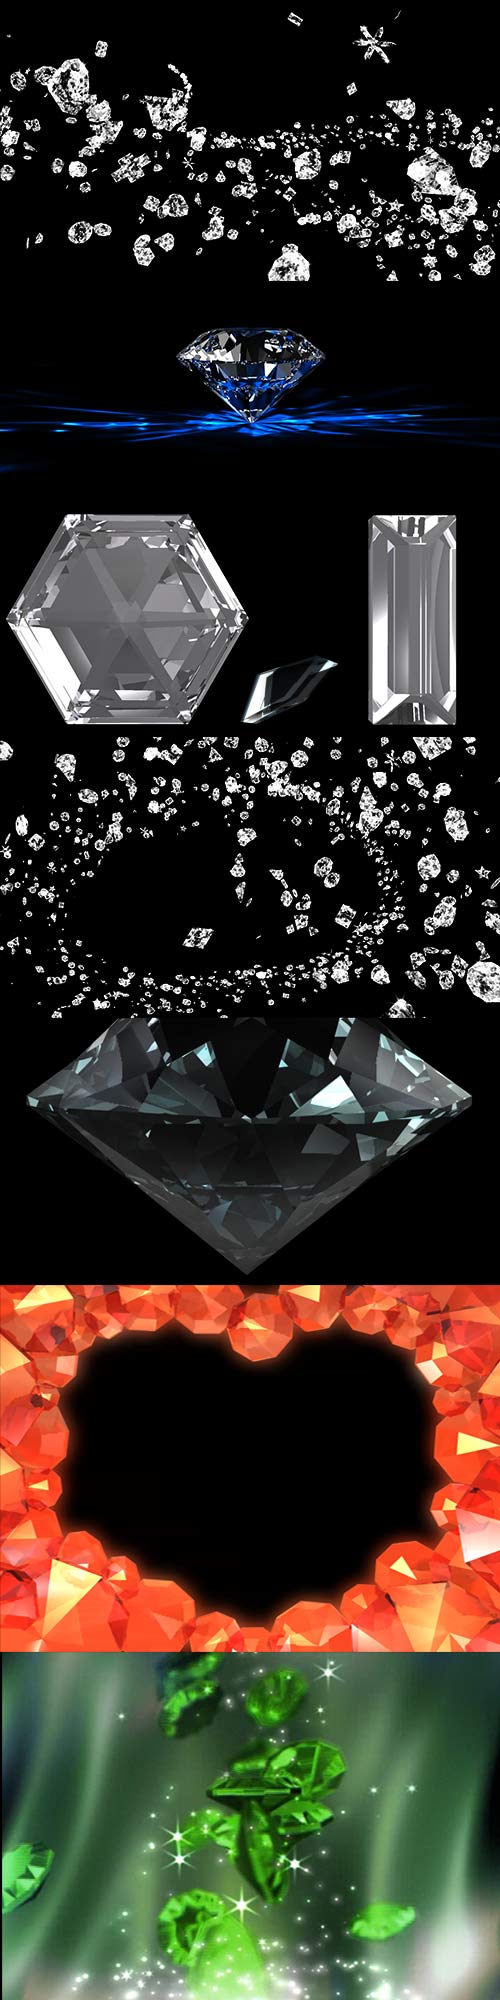 11 Video footage of precious stones, diamonds